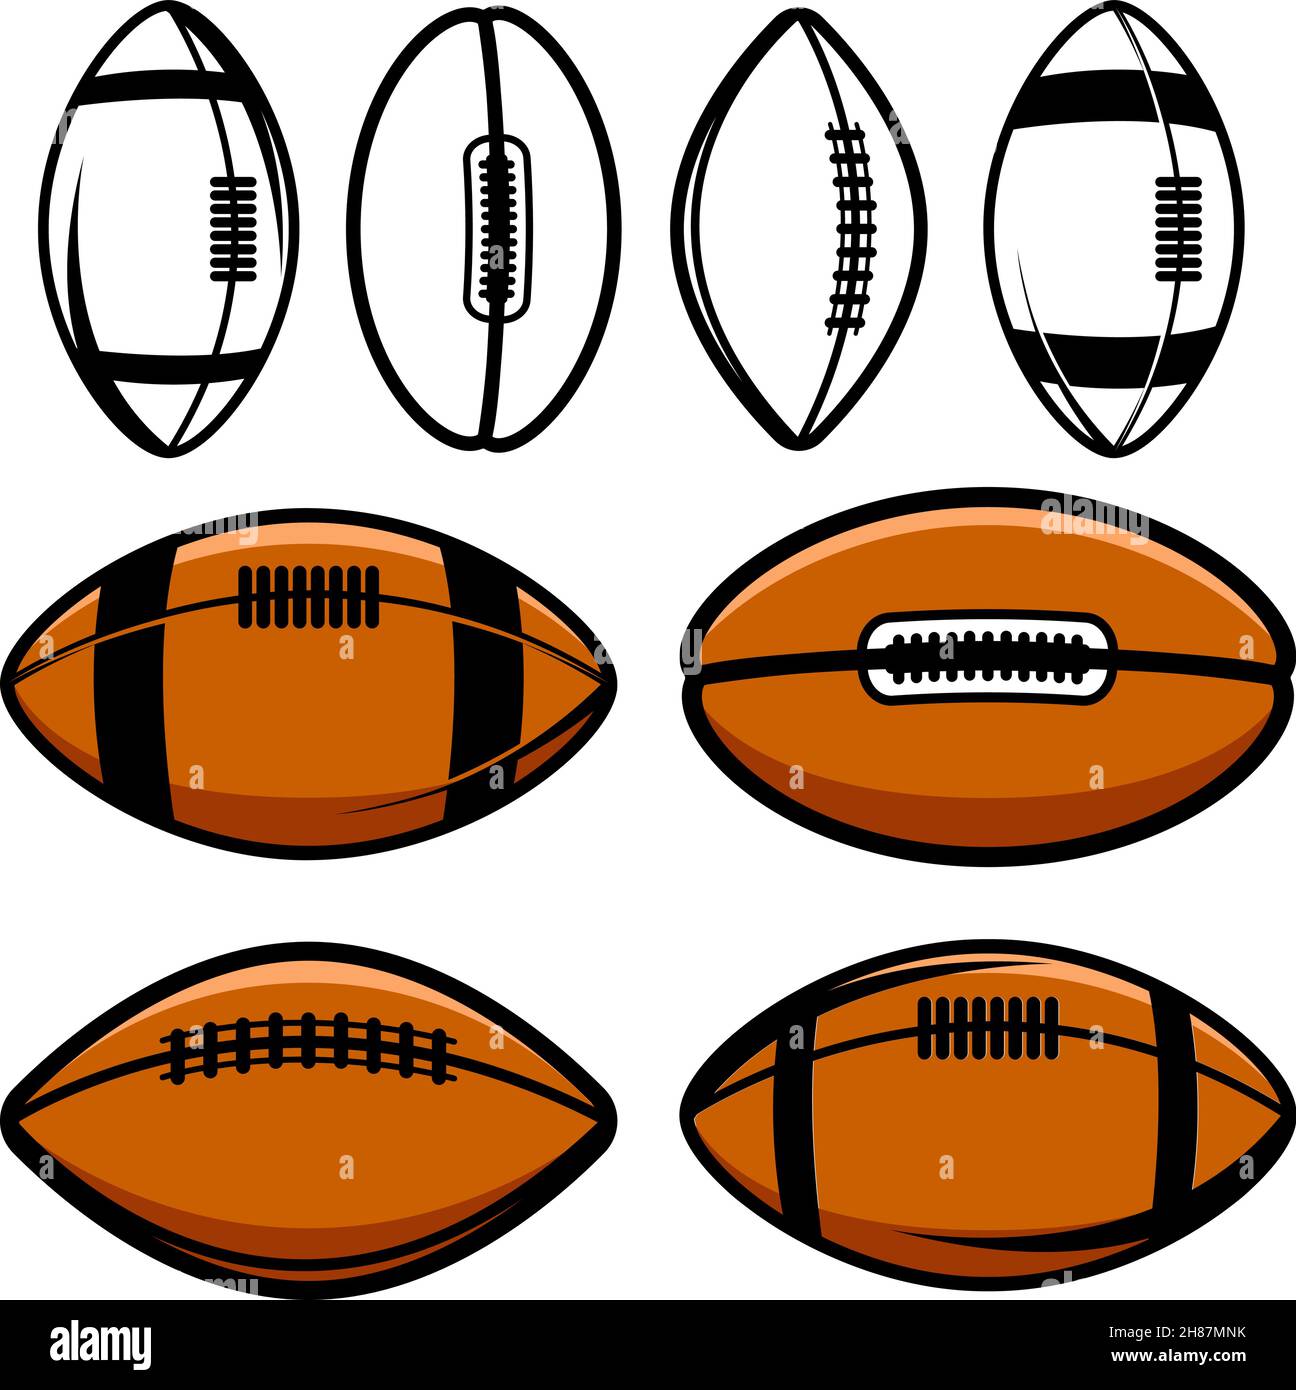 Set of Illustrations of rugby balls in vintage monochrome style. Design element for logo, label, sign, emblem, poster. Vector illustration Stock Vector